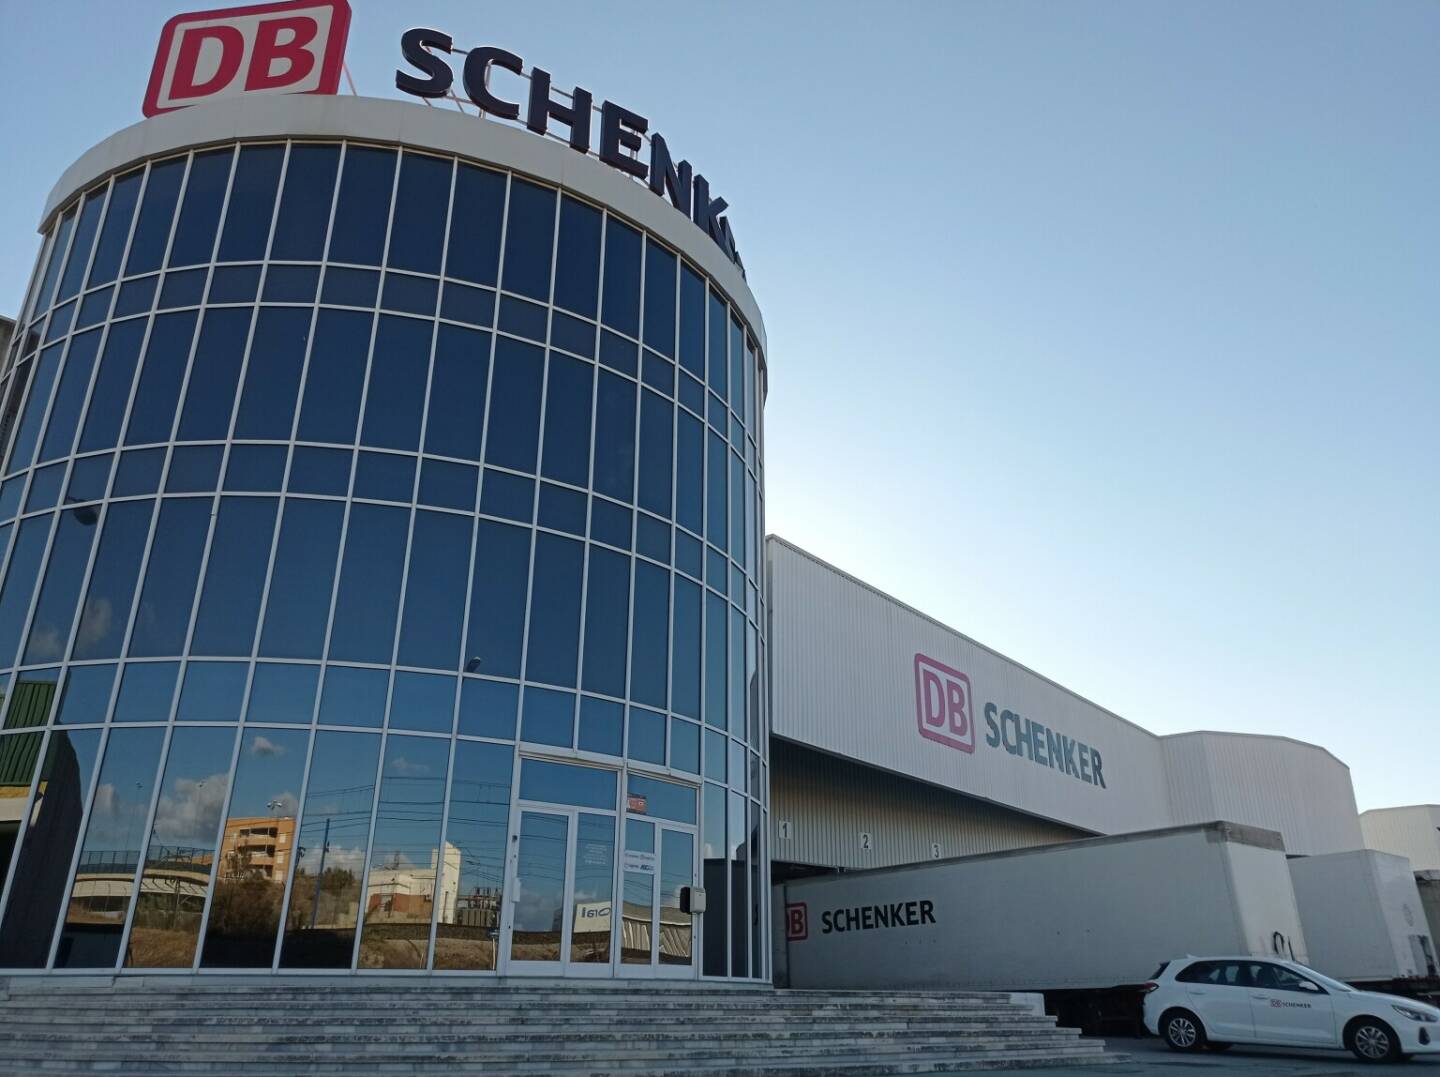 Der Logistikdienstleister DB Schenker gab die Übernahme des gesamten Aktienkapitals von Grupo Loserco und Transportes Santos Campos bekannt, zwei führenden Unternehmen im Landverkehr in Andalusien und Valencia, Spanien. Fotocredit:DB Schenker